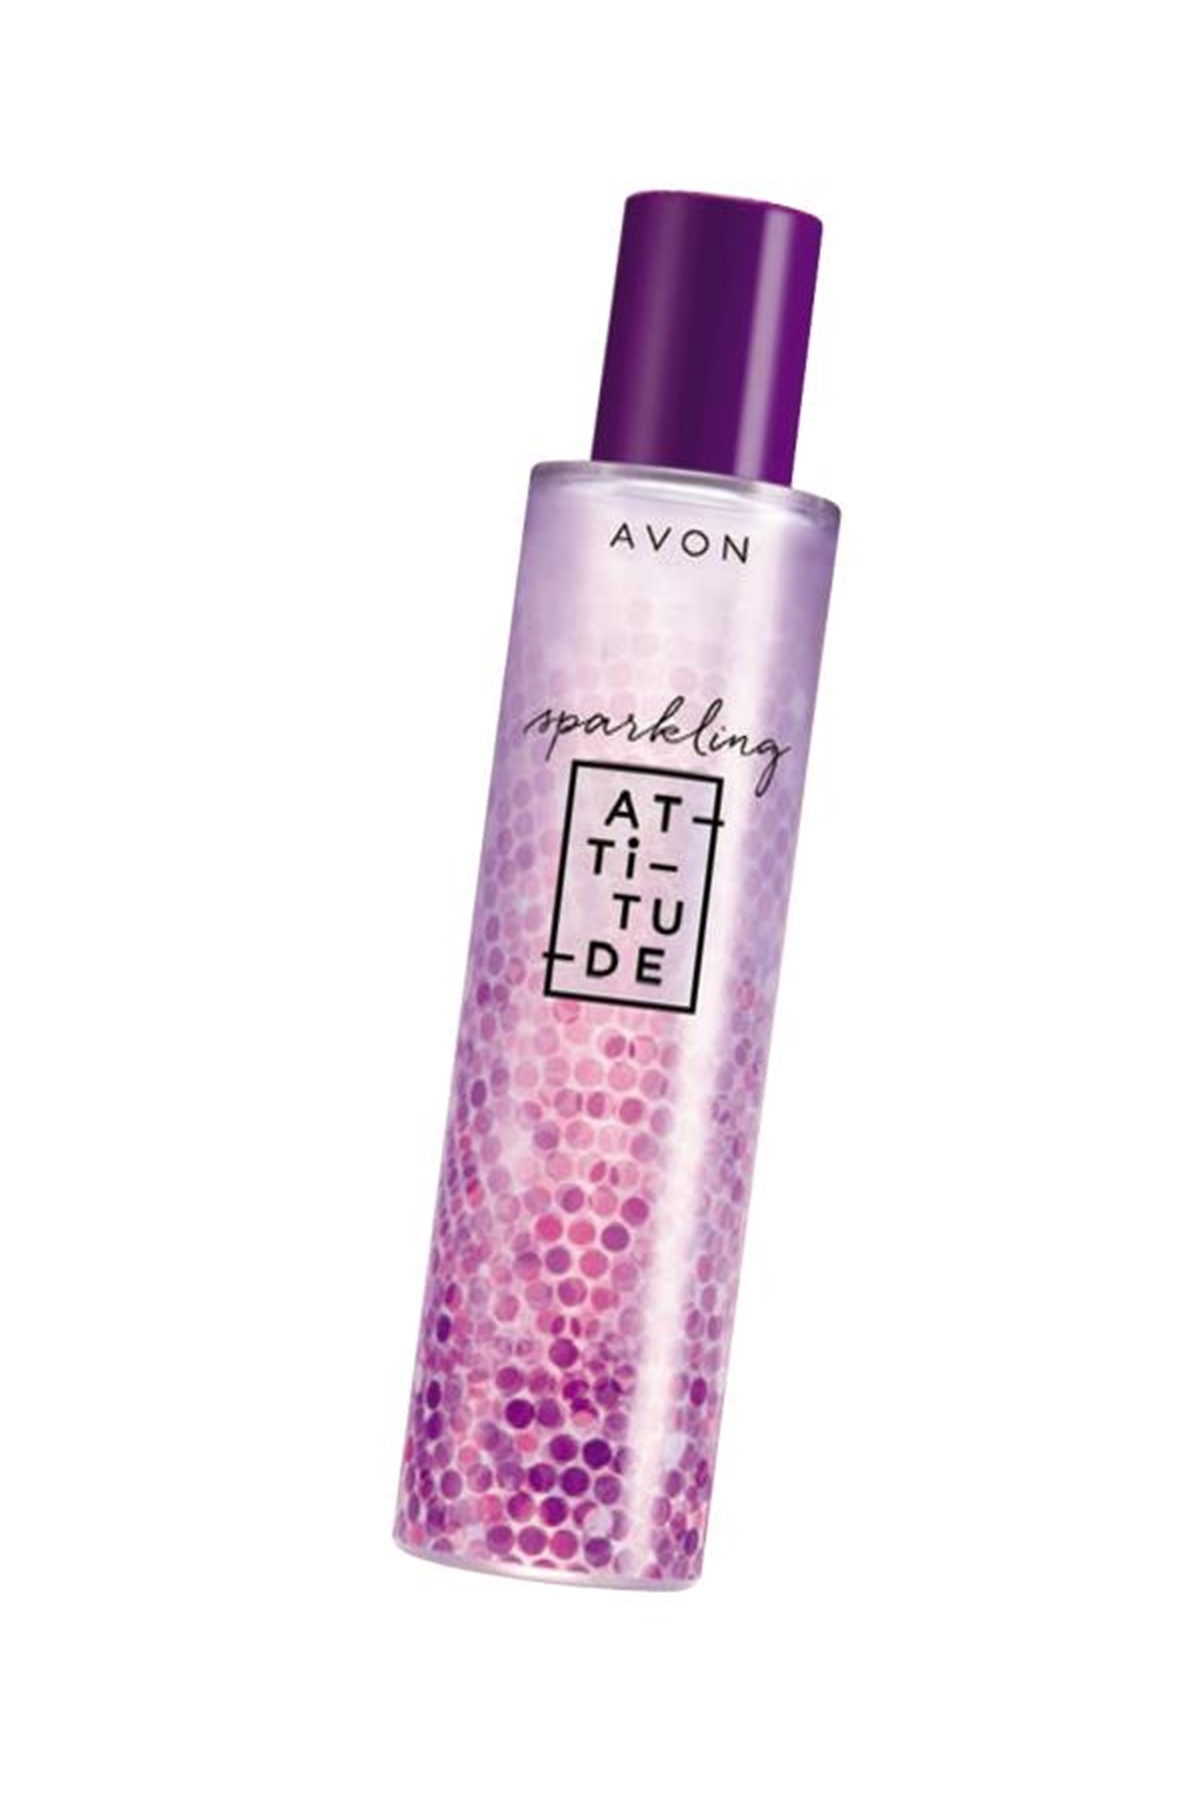 Avon Attitude Sparkling Bayan parfümü EDT fiyatı AVON